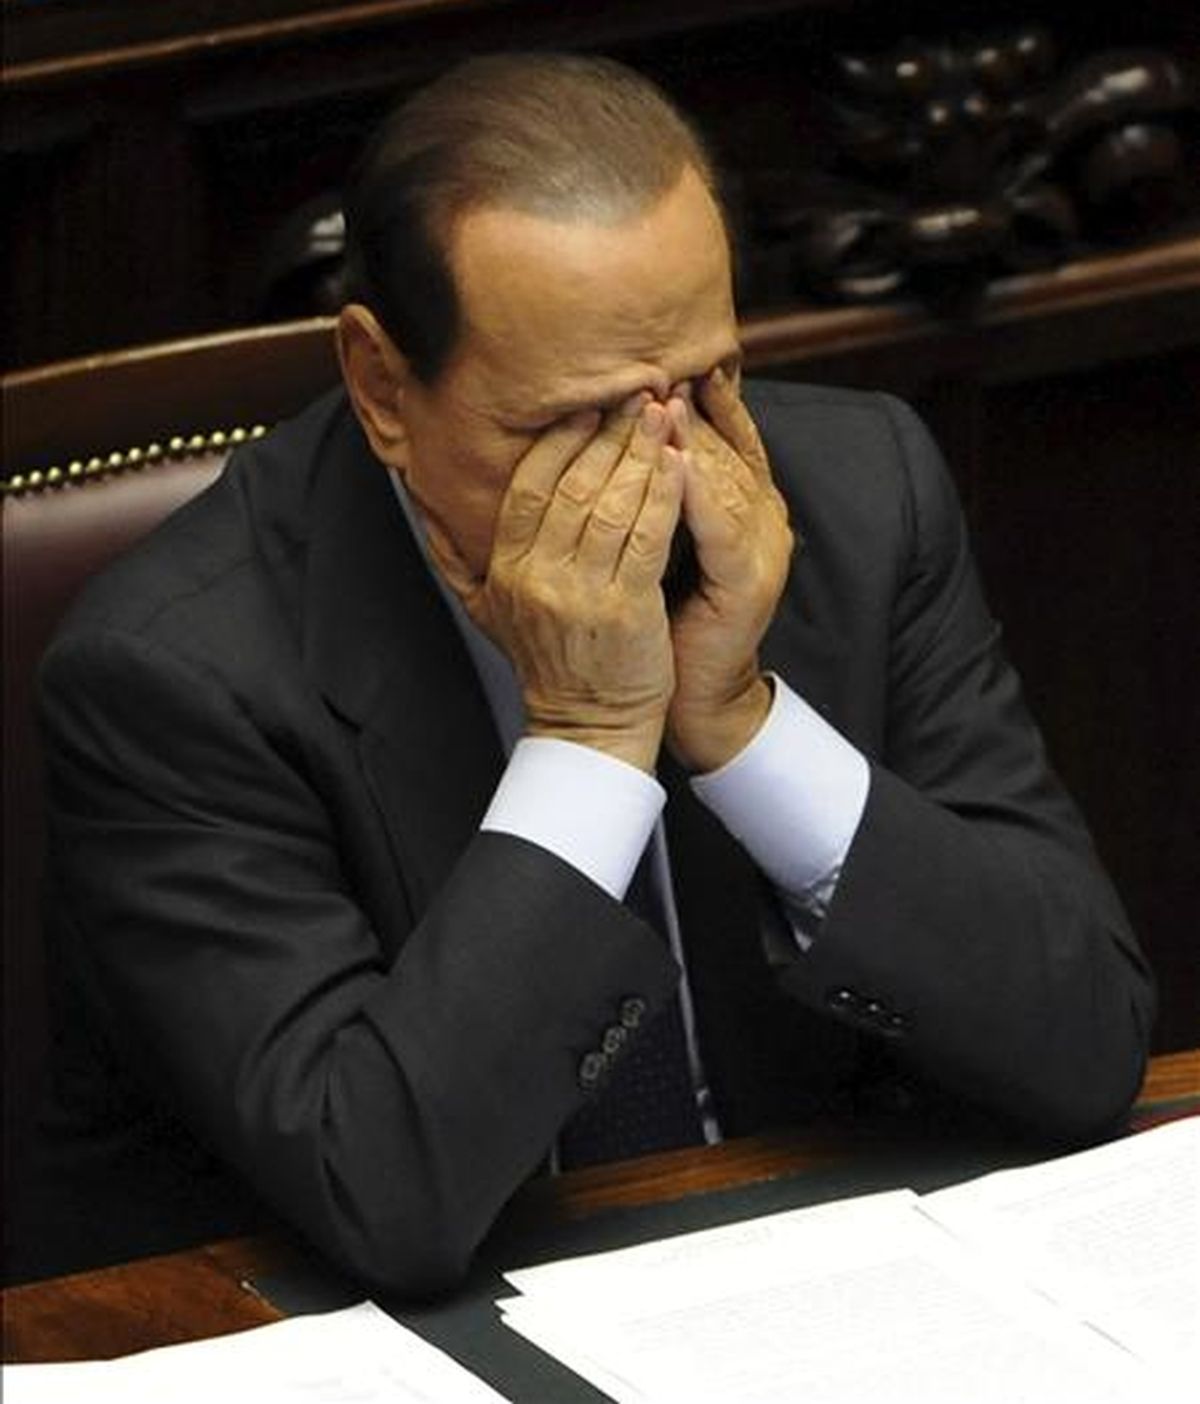 El primer ministro italiano Silvio Berlusconi gesticula durante la sesión del Congreso italiano celebrada en Roma, Italia, el 29 de septiembre de 2010. EFE/Archivo